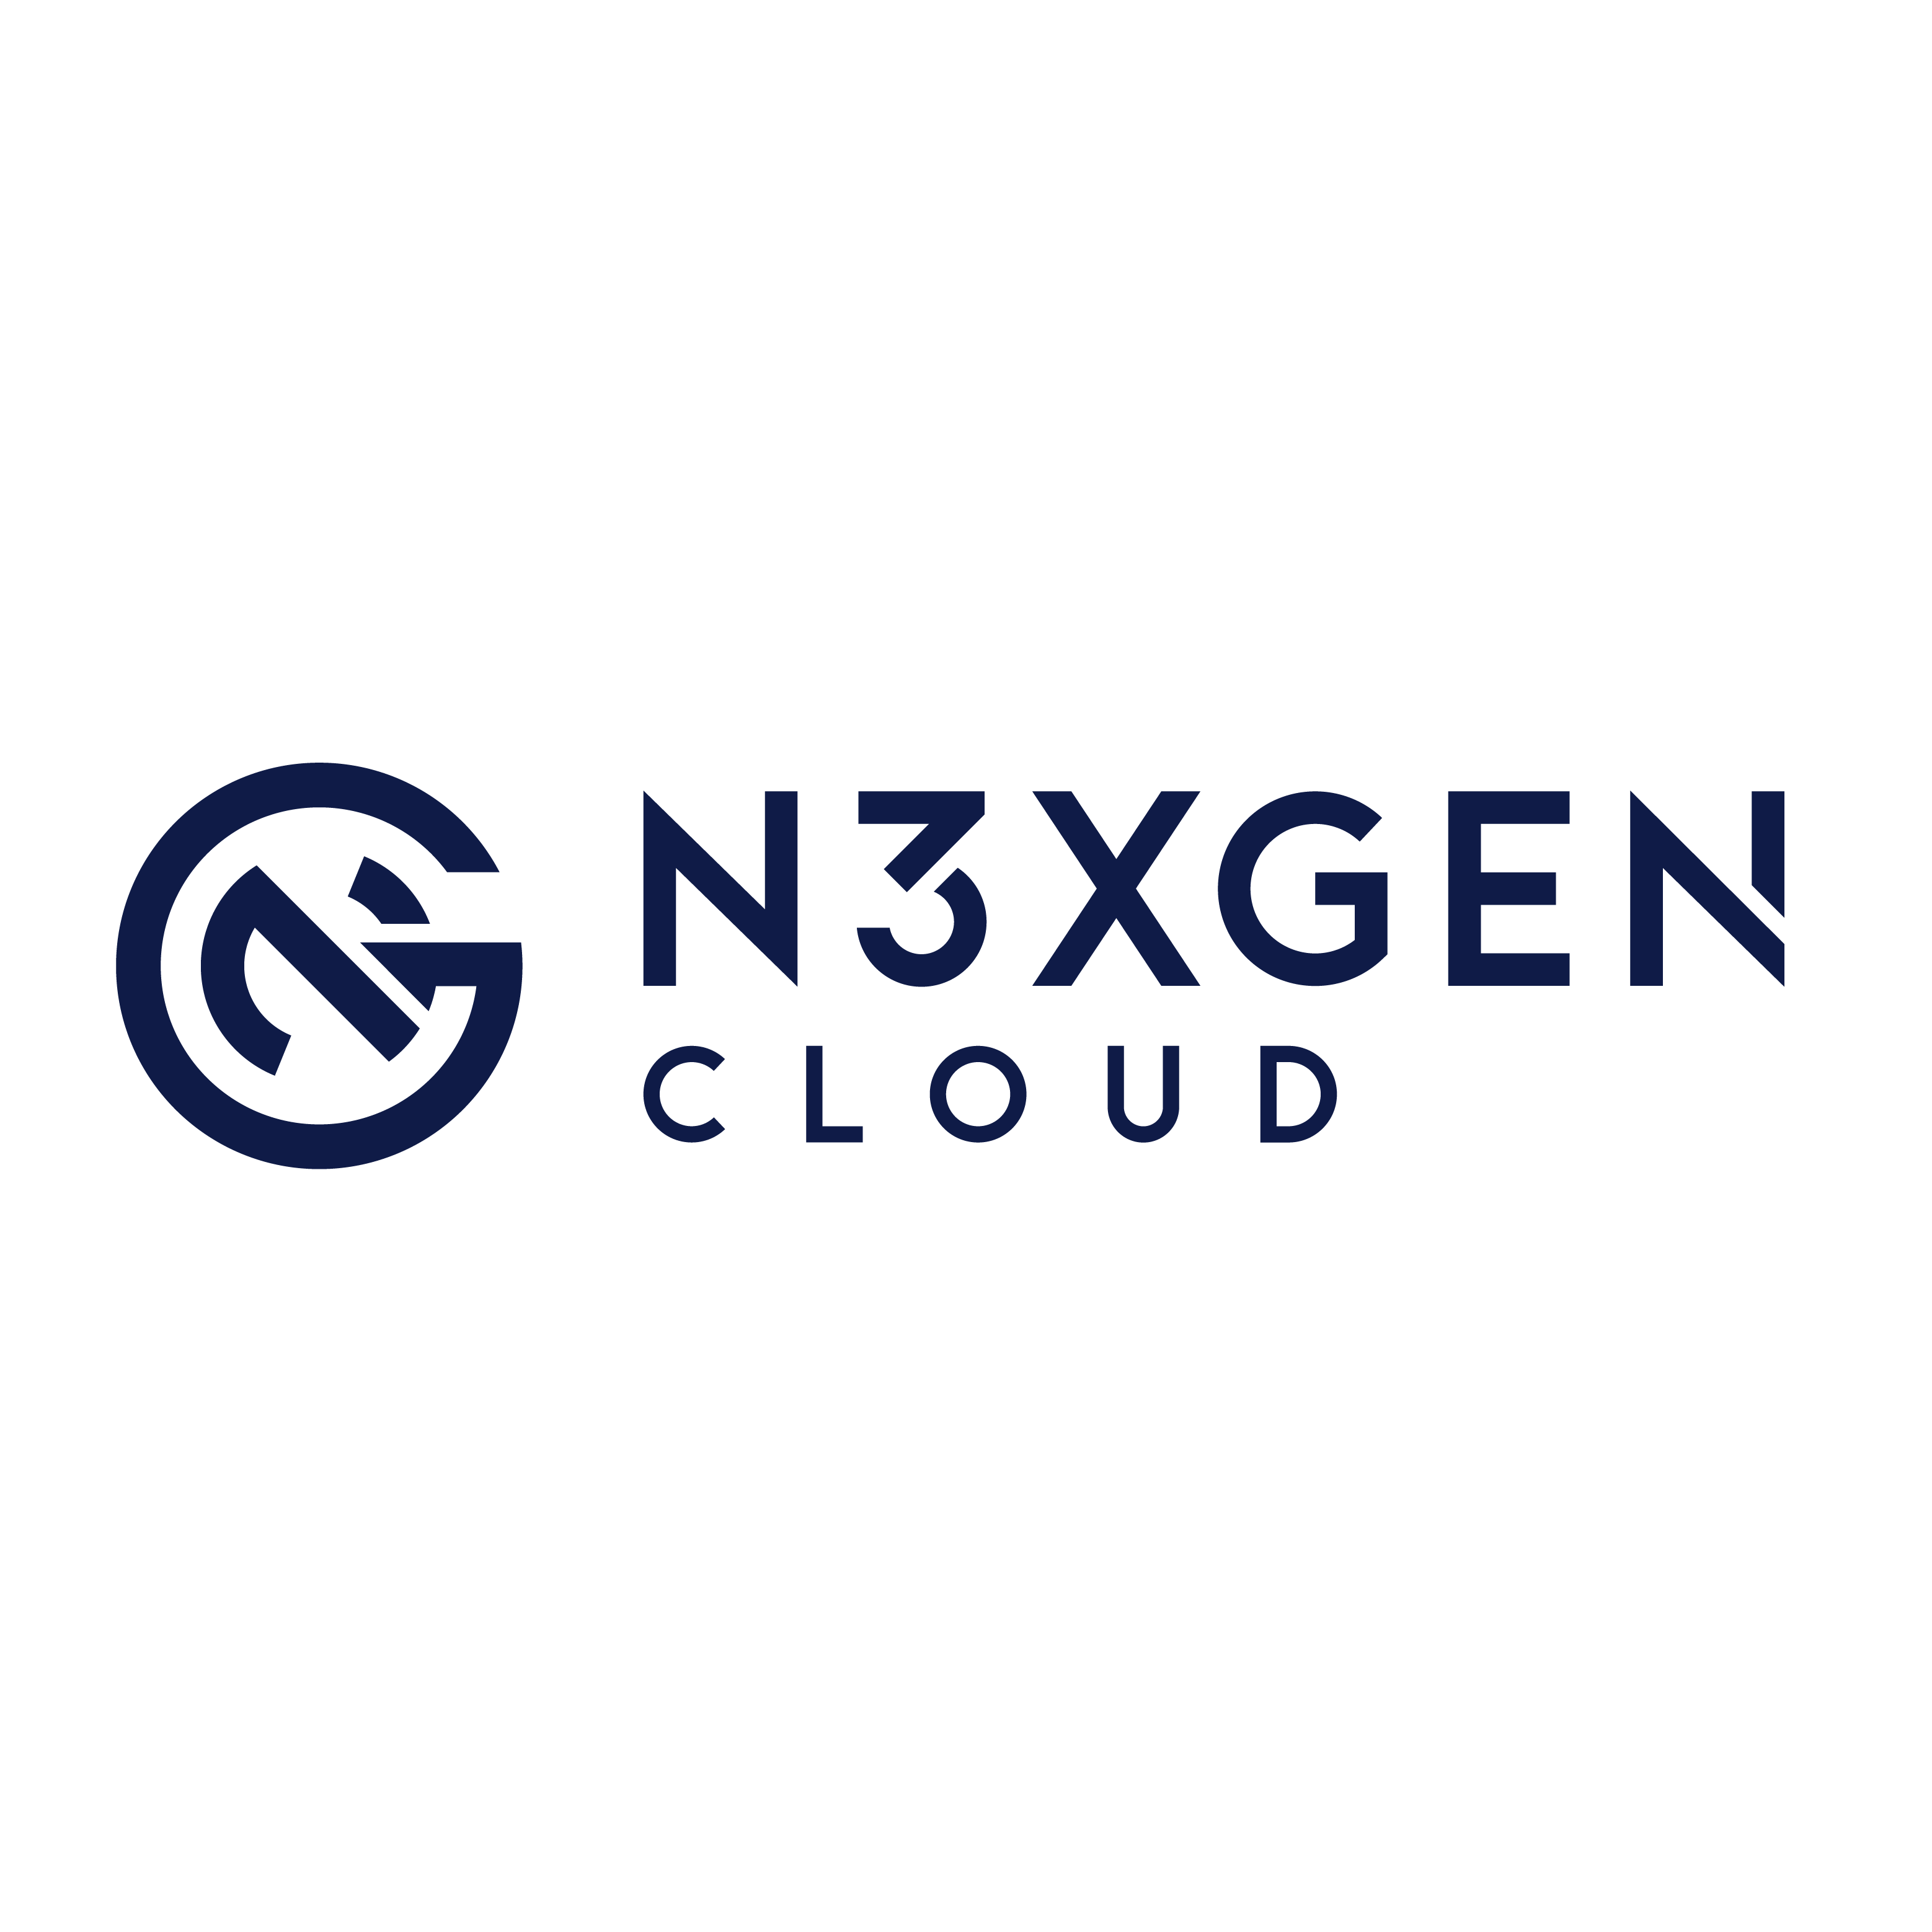 NexGen Cloud